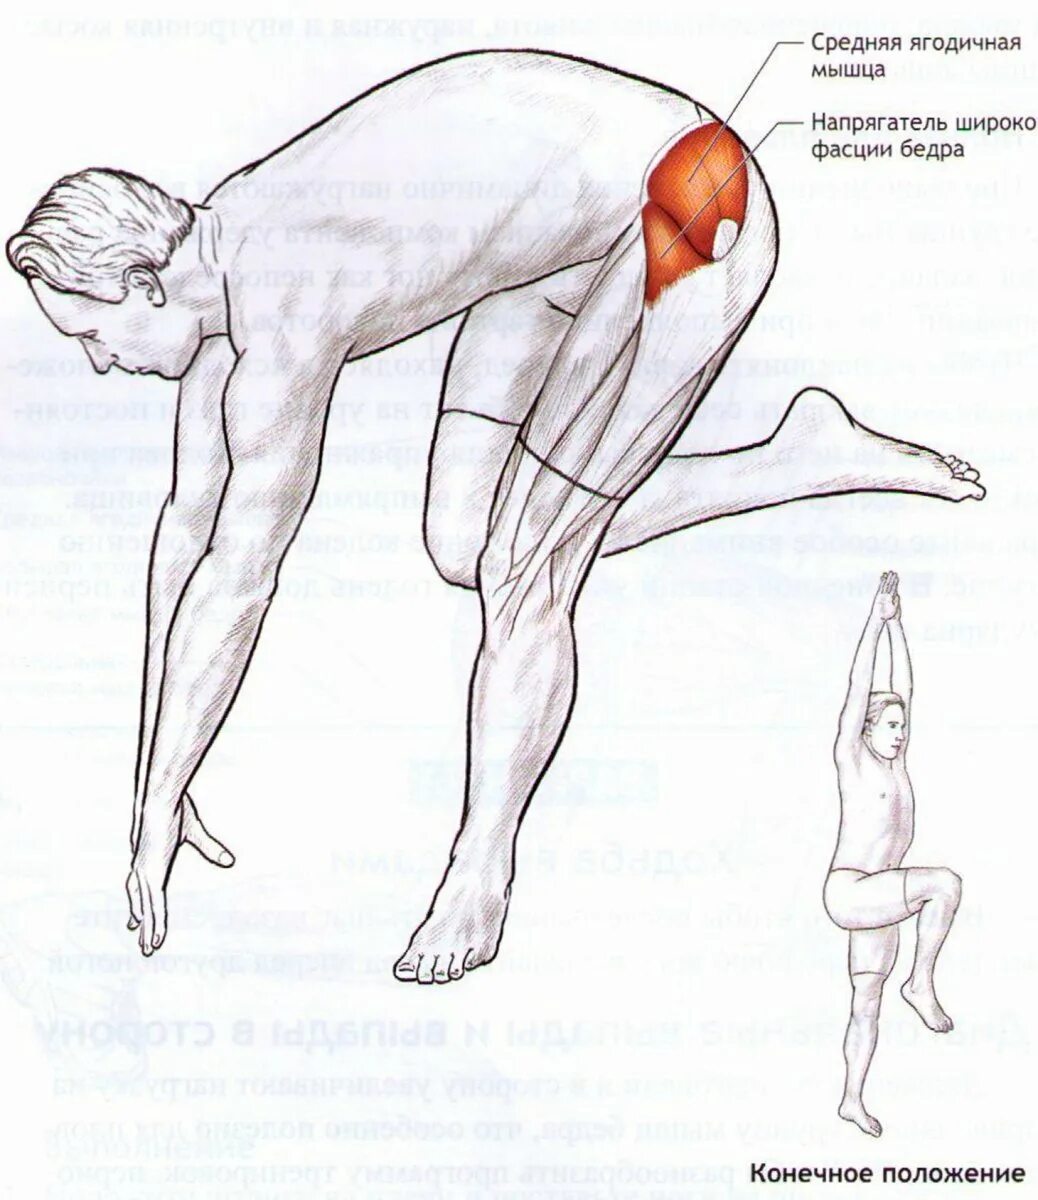 Поясница нога отнимается. Напрягатель широкой фасции бедра растяжка. Растяжка средних ягодичных мышц. Упражнения на растяжку напрягателя широкой фасции бедра. Упражнения на среднюю ягодичную мышцу.